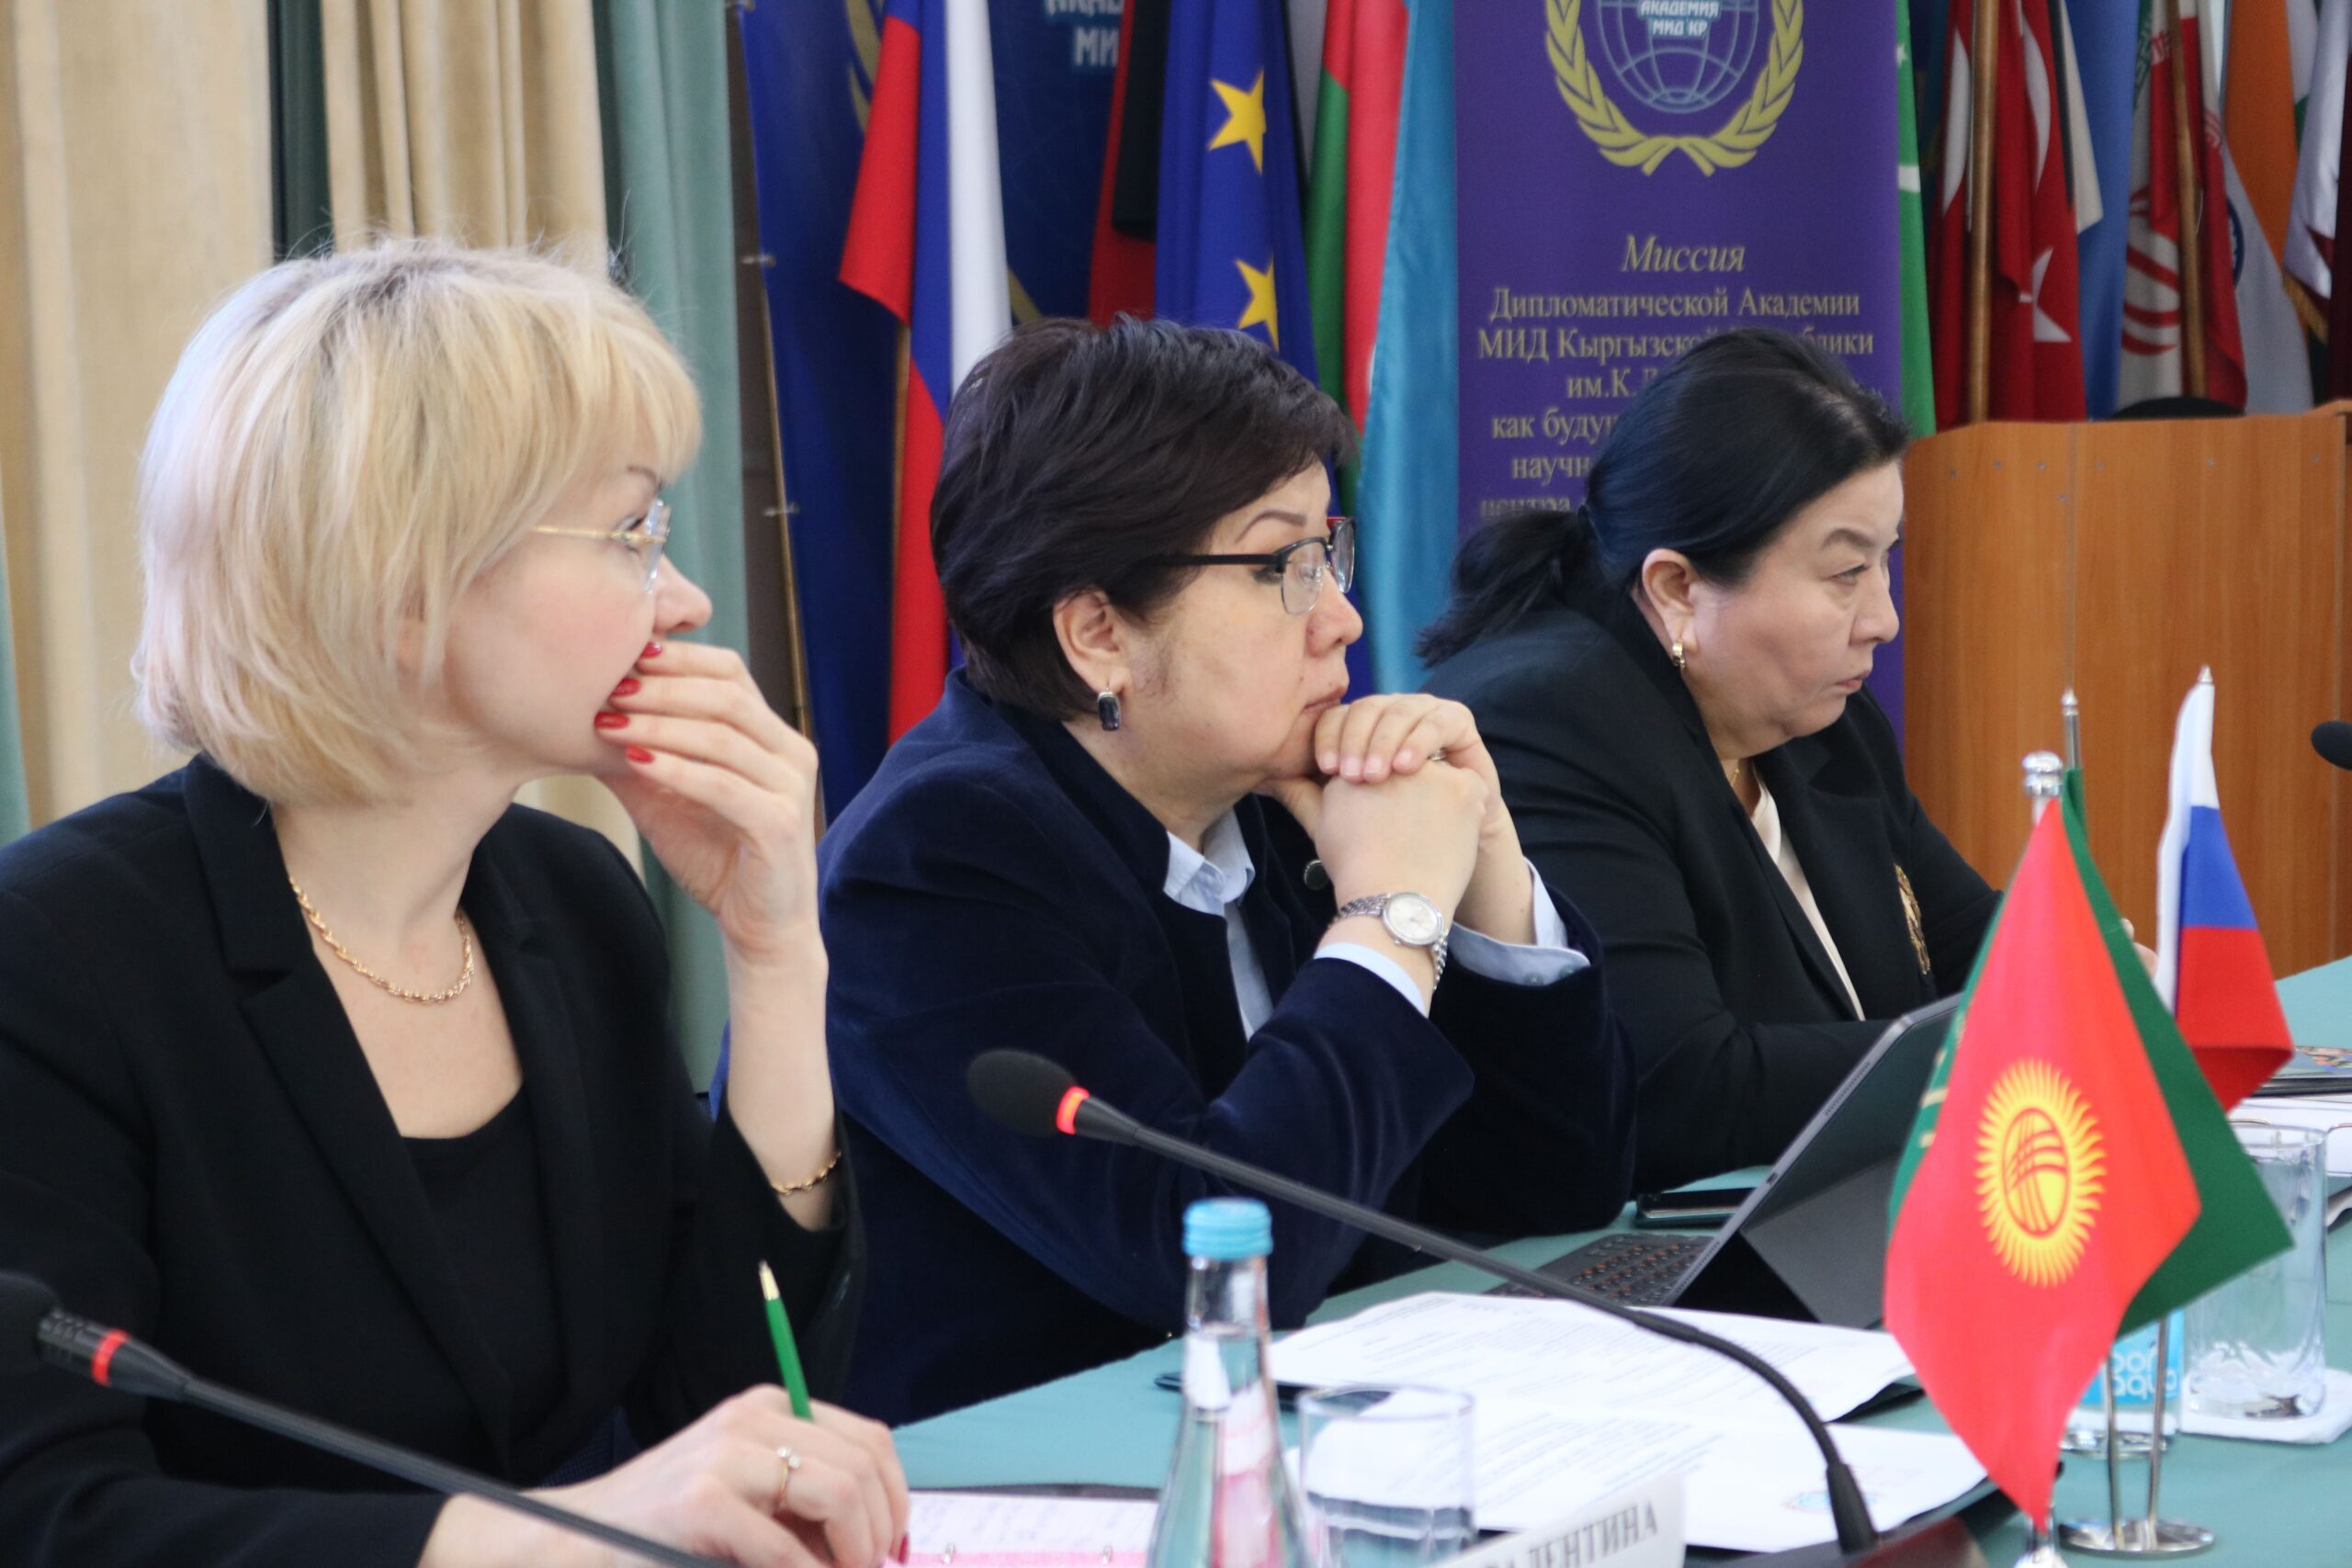 23 марта 2023 года в Дипломатической академии МИД КР состоялся  Международный круглый стол «Дружественный коммуникационный режим Кыргызстана: перспективы развития».